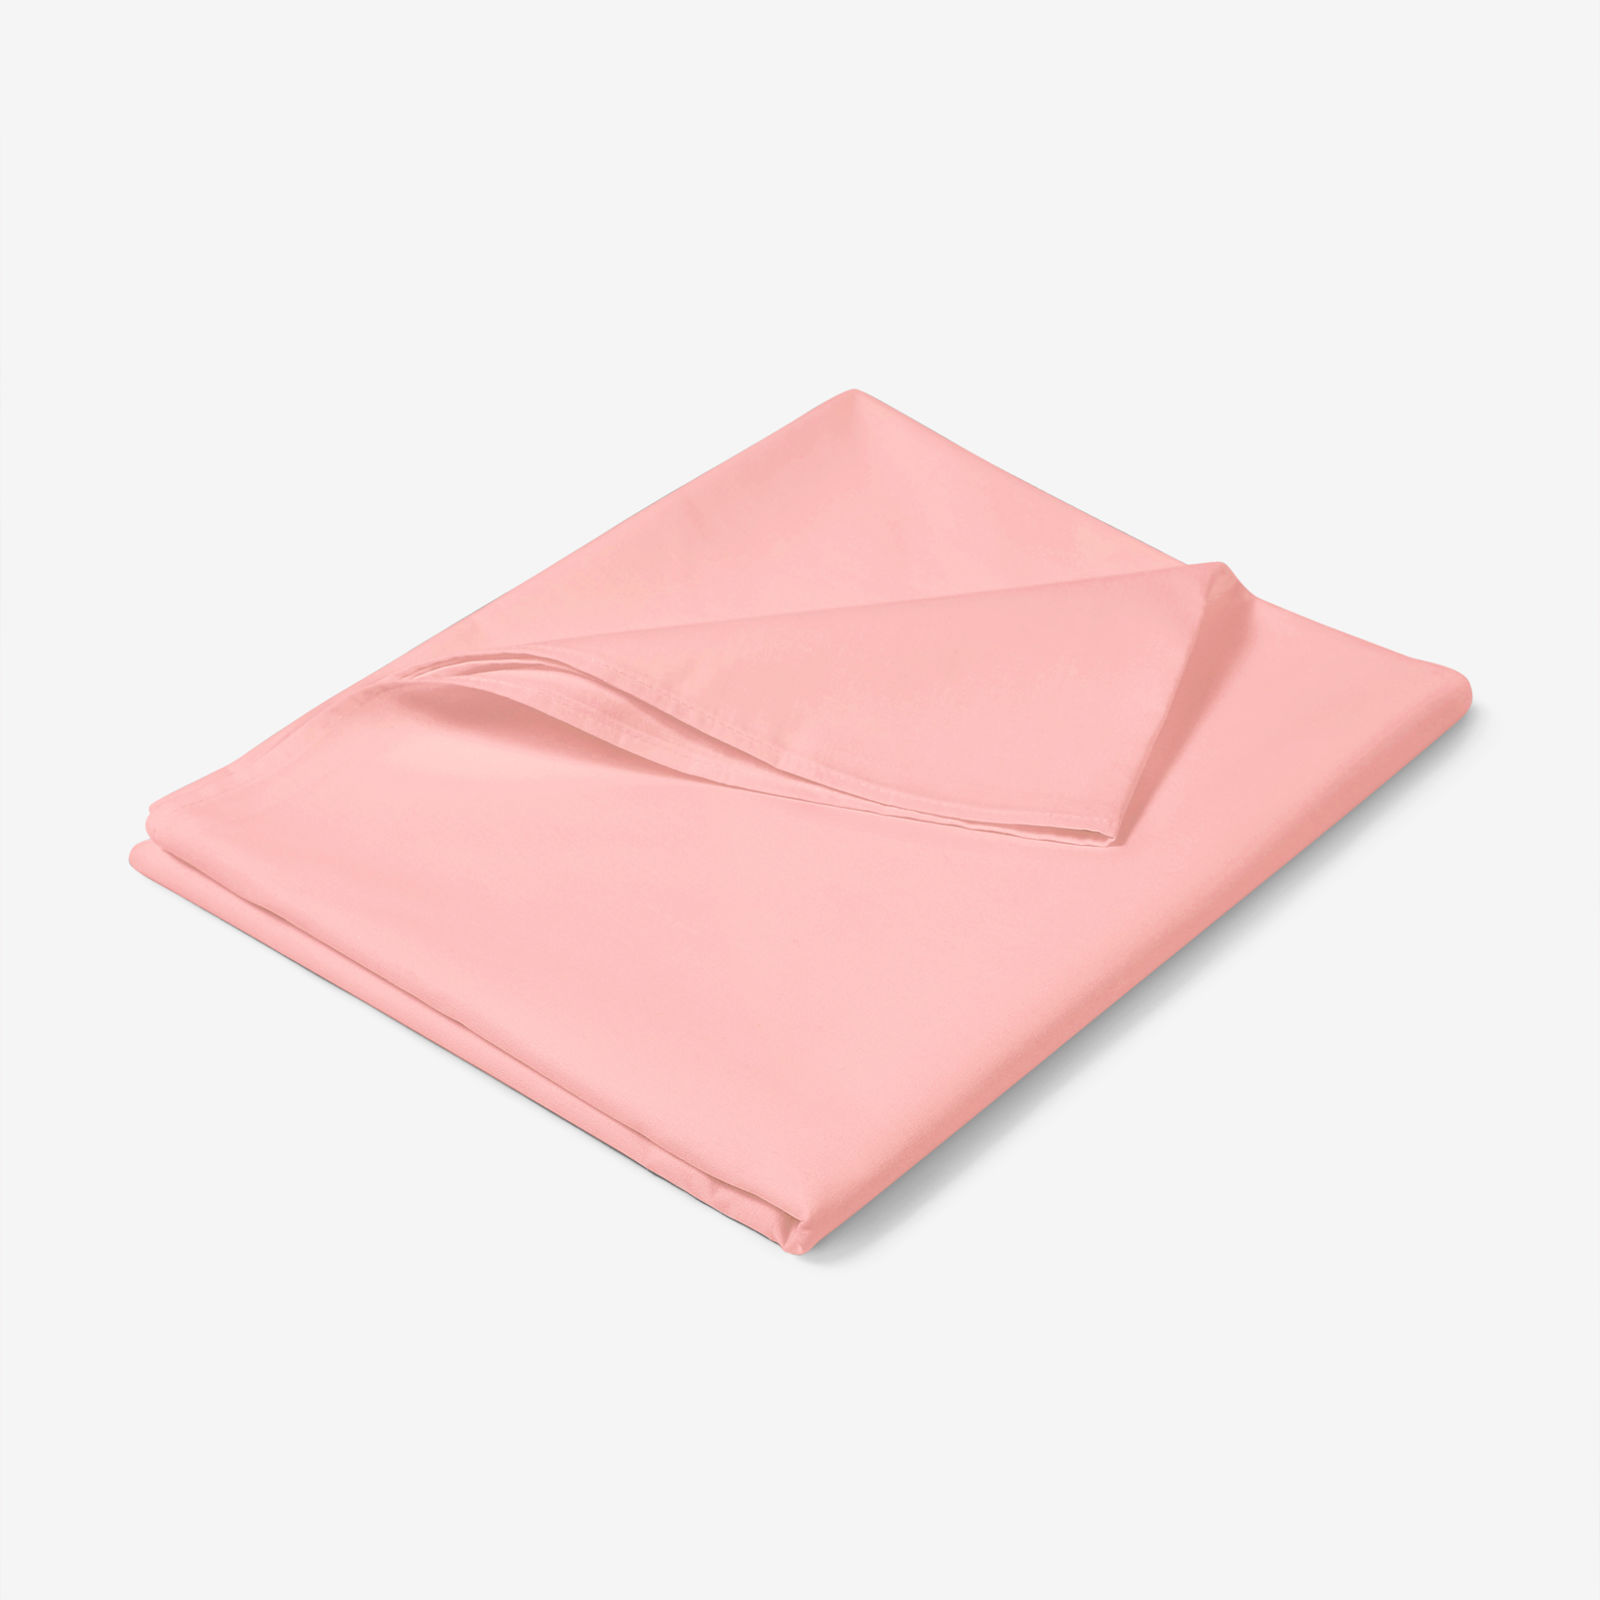 Sima pamut lepedő - pasztell rózsaszín